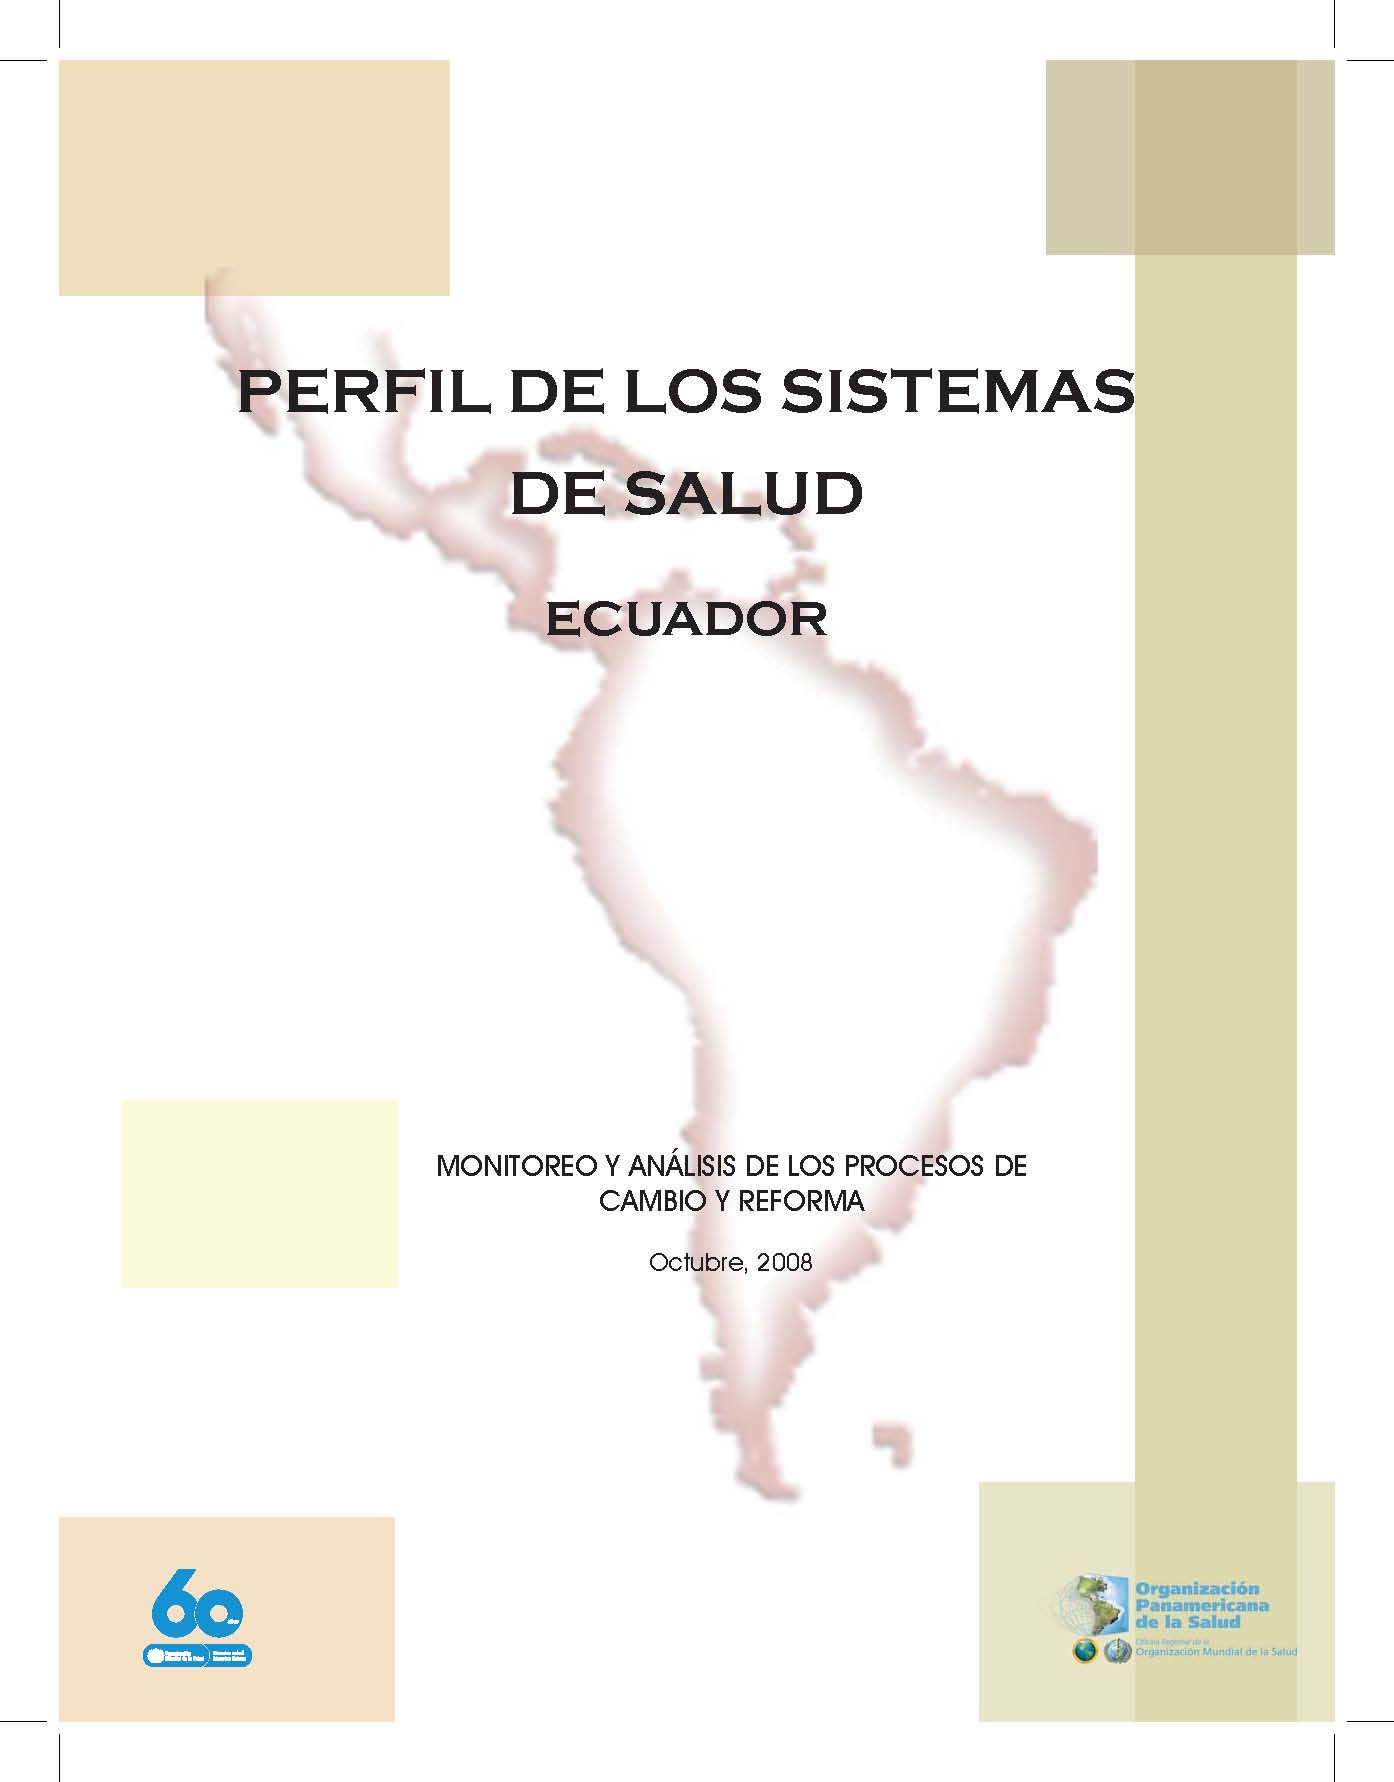 Perfil de los sistemas de salud Ecuador: monitoreo y análisis de los procesos de cambio y reforma